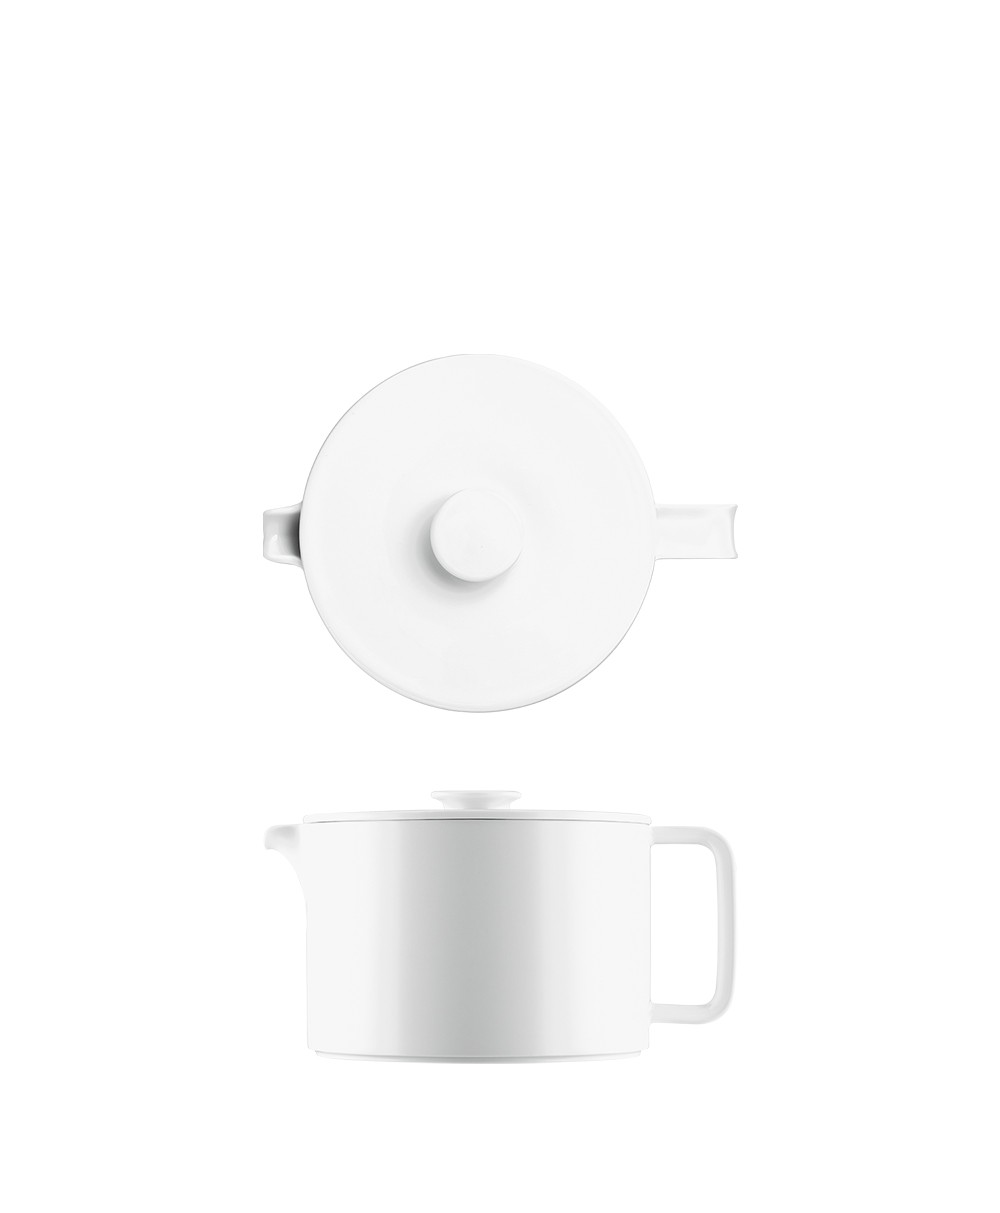 Hier abgebildet die kleine Teekanne mit Sieb der Serie Datum von Fürstenberg - RAUM concept store